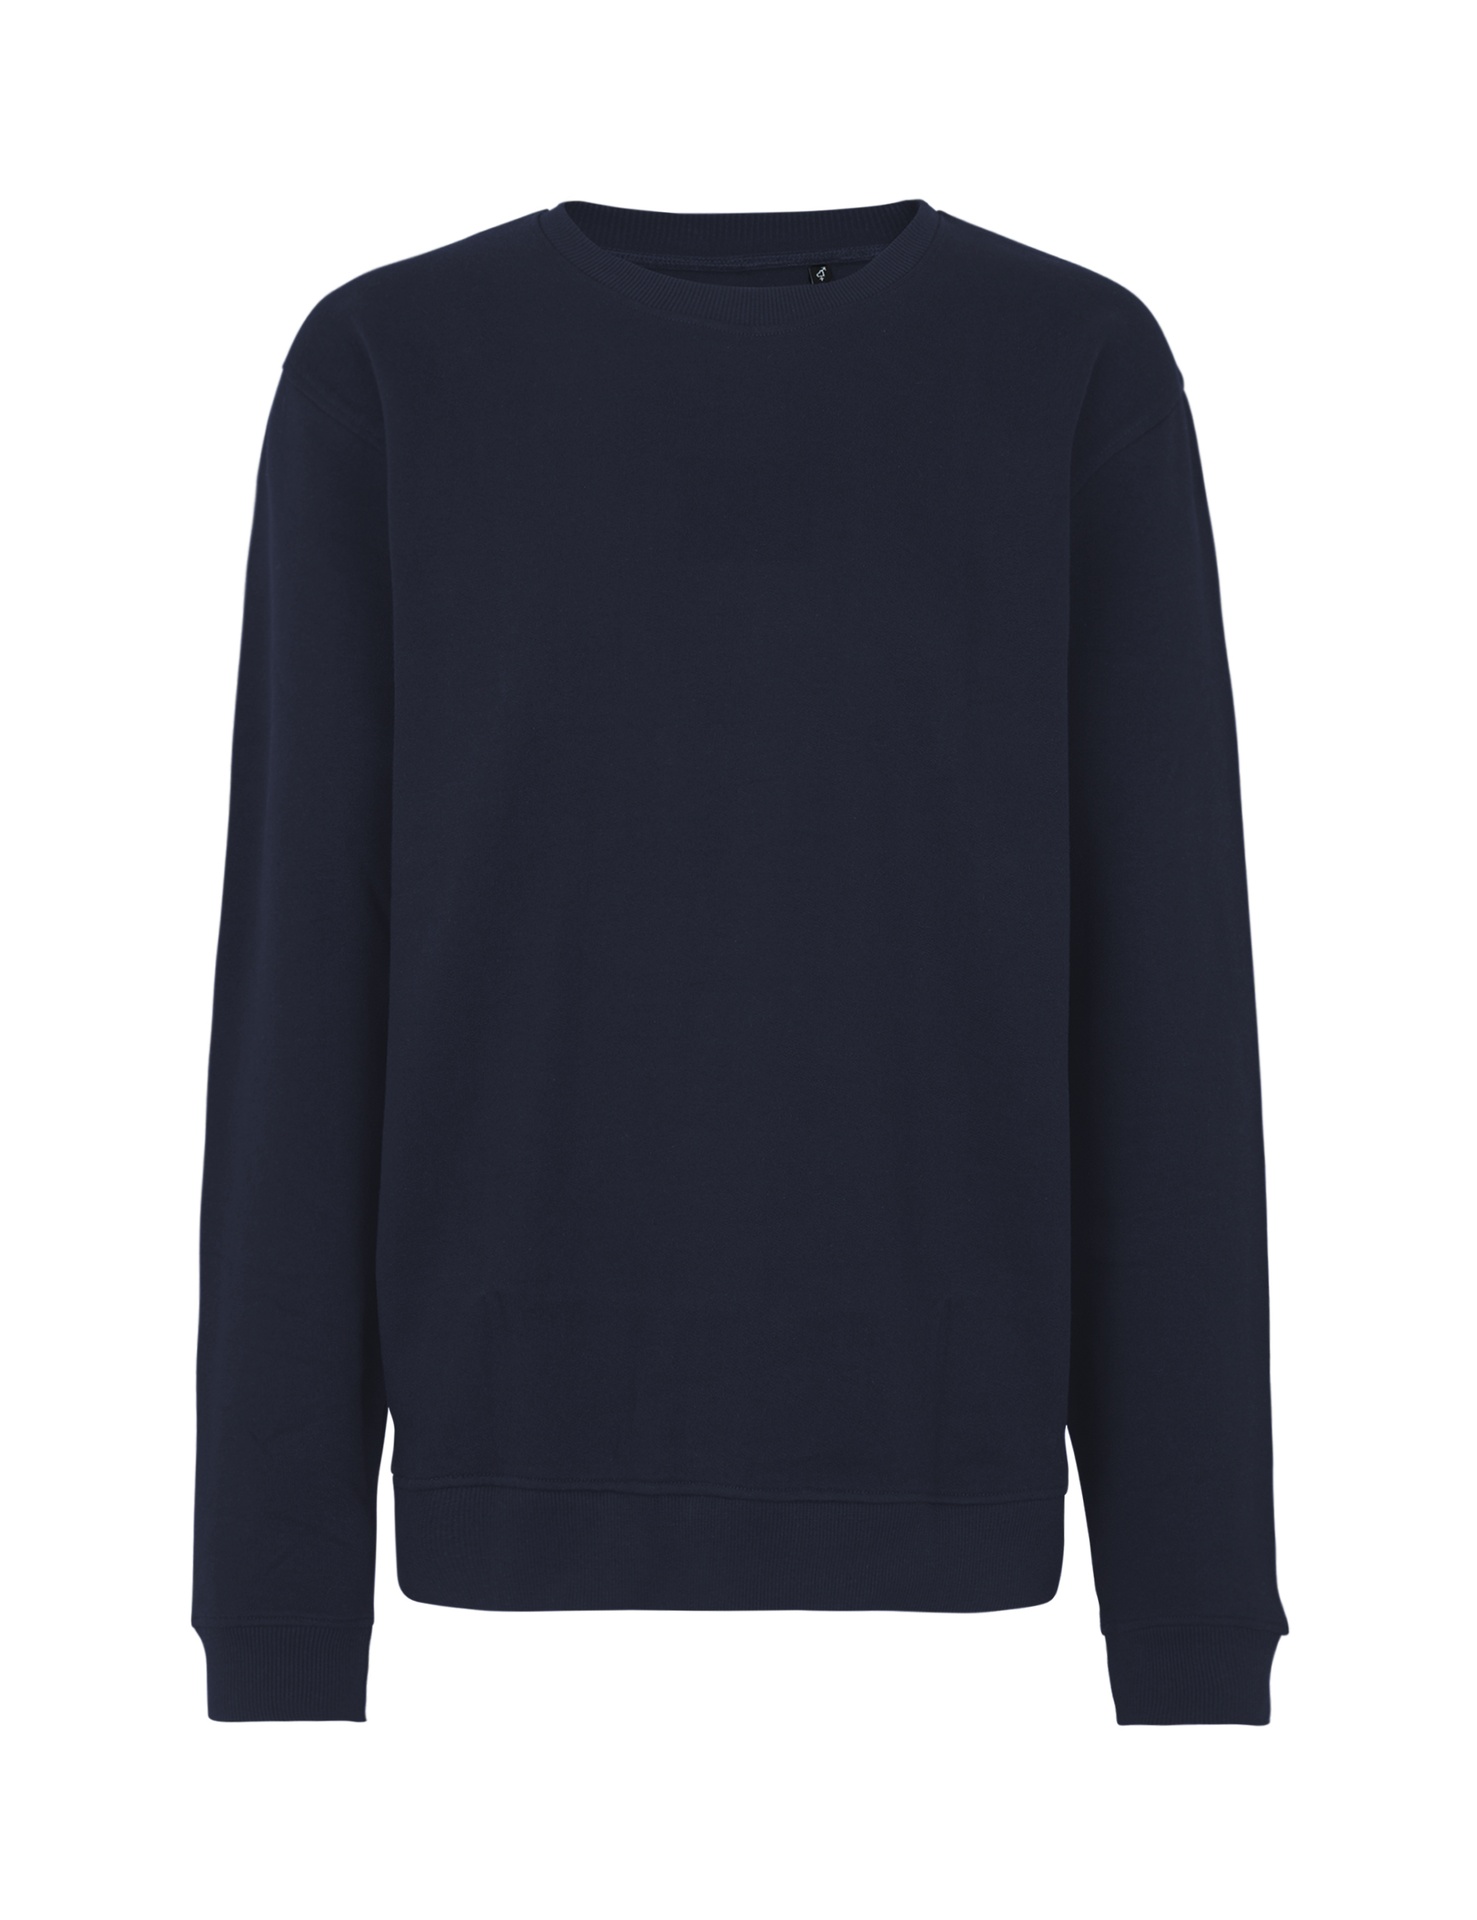 [PR/03534] Unisex Workwear Sweatshirt (Navy 04, XL)